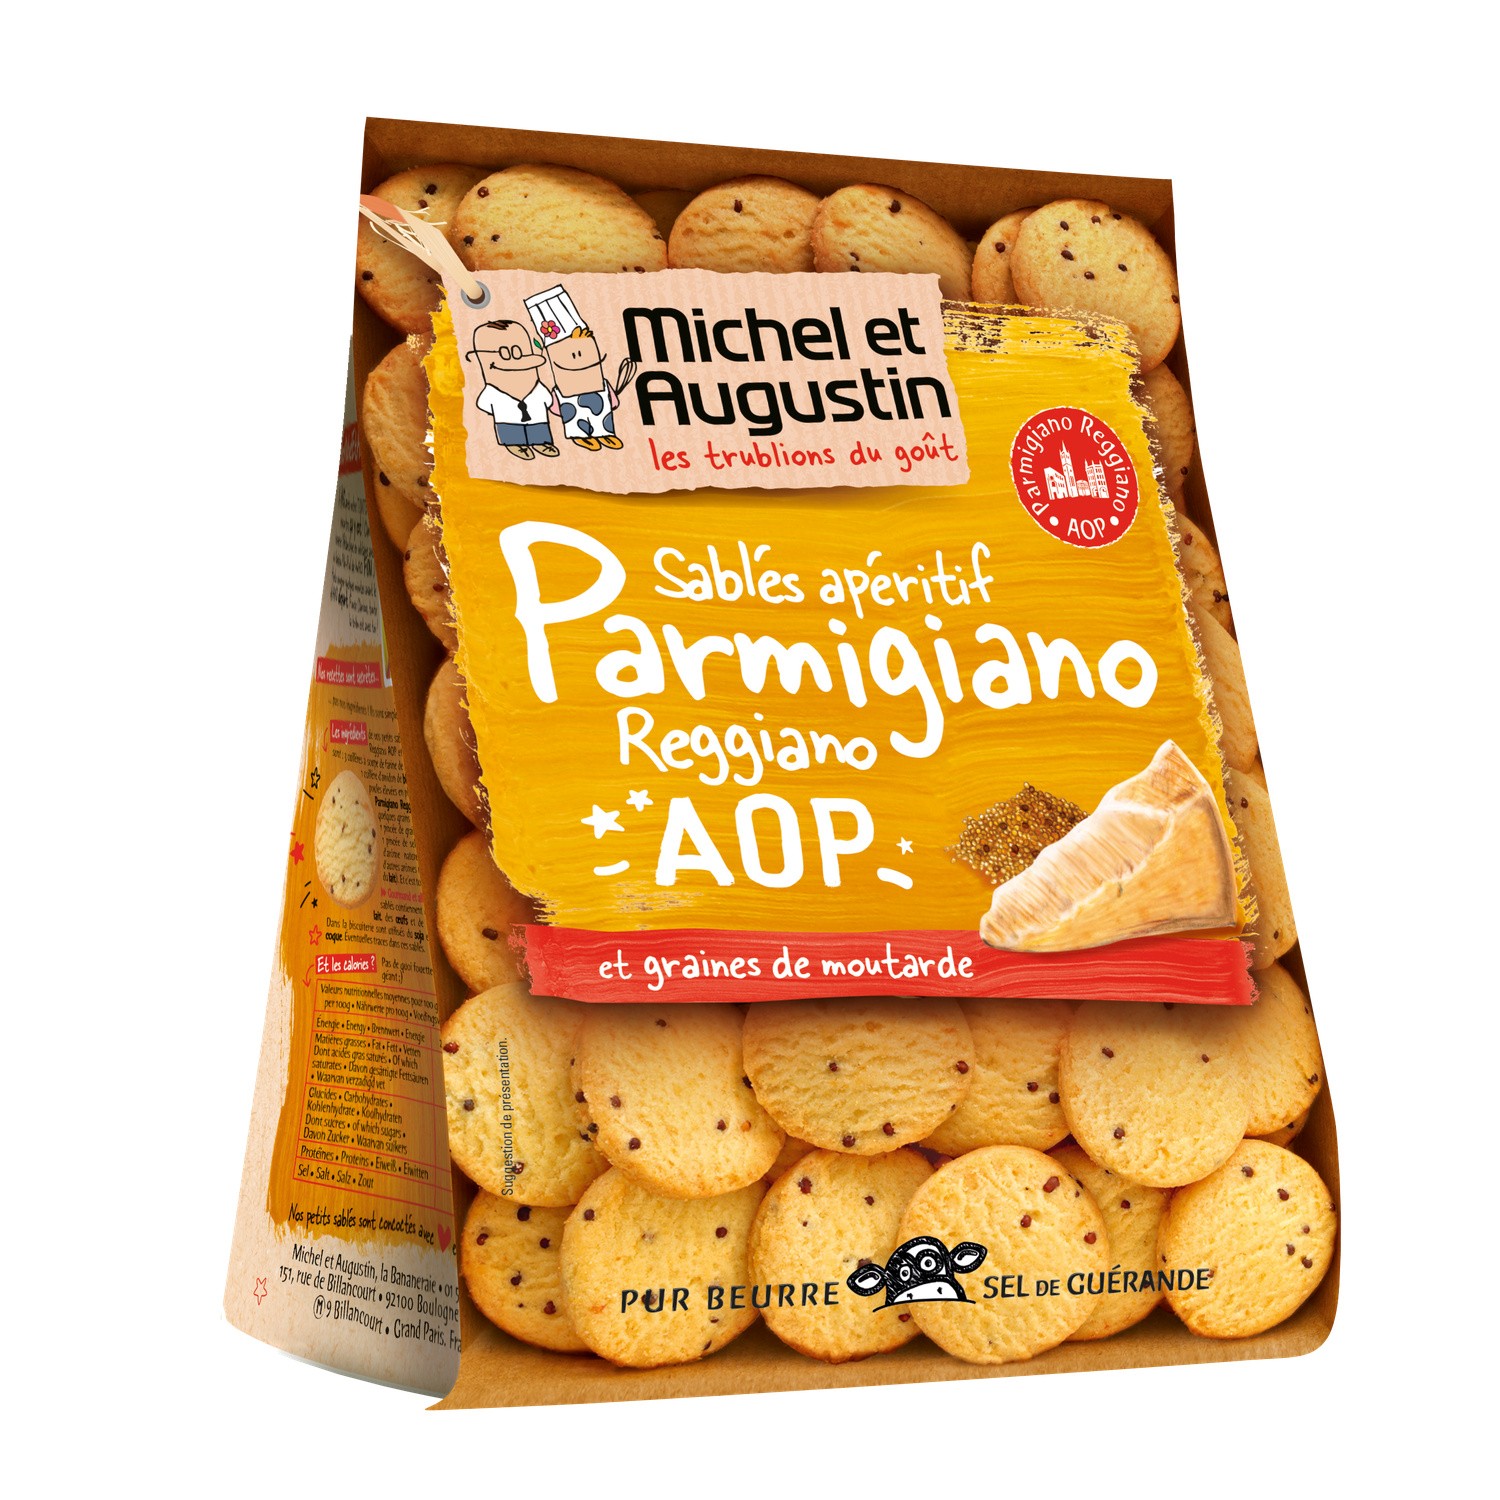 Sablés apéritif au Parmigiano Reggiano et graines de moutarde